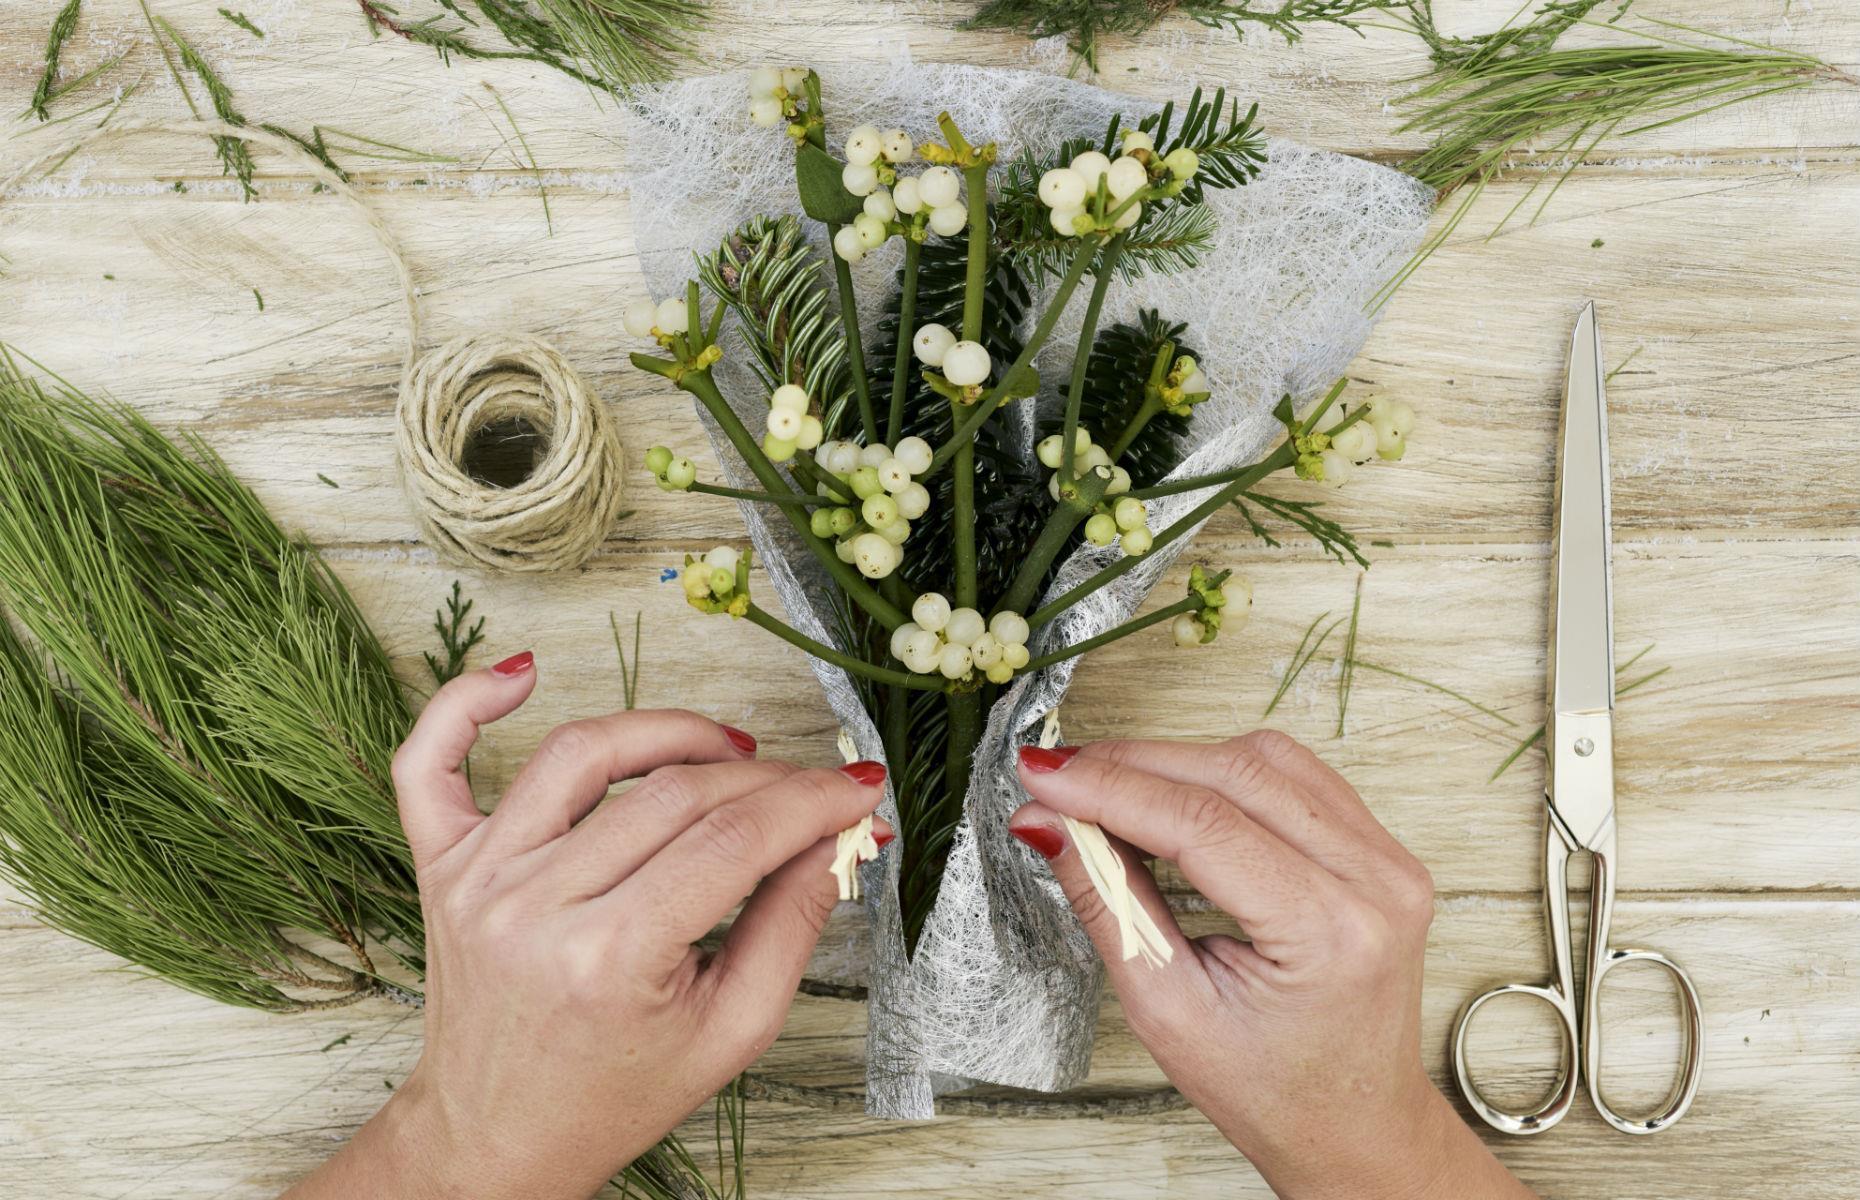 Make mistletoe bouquets